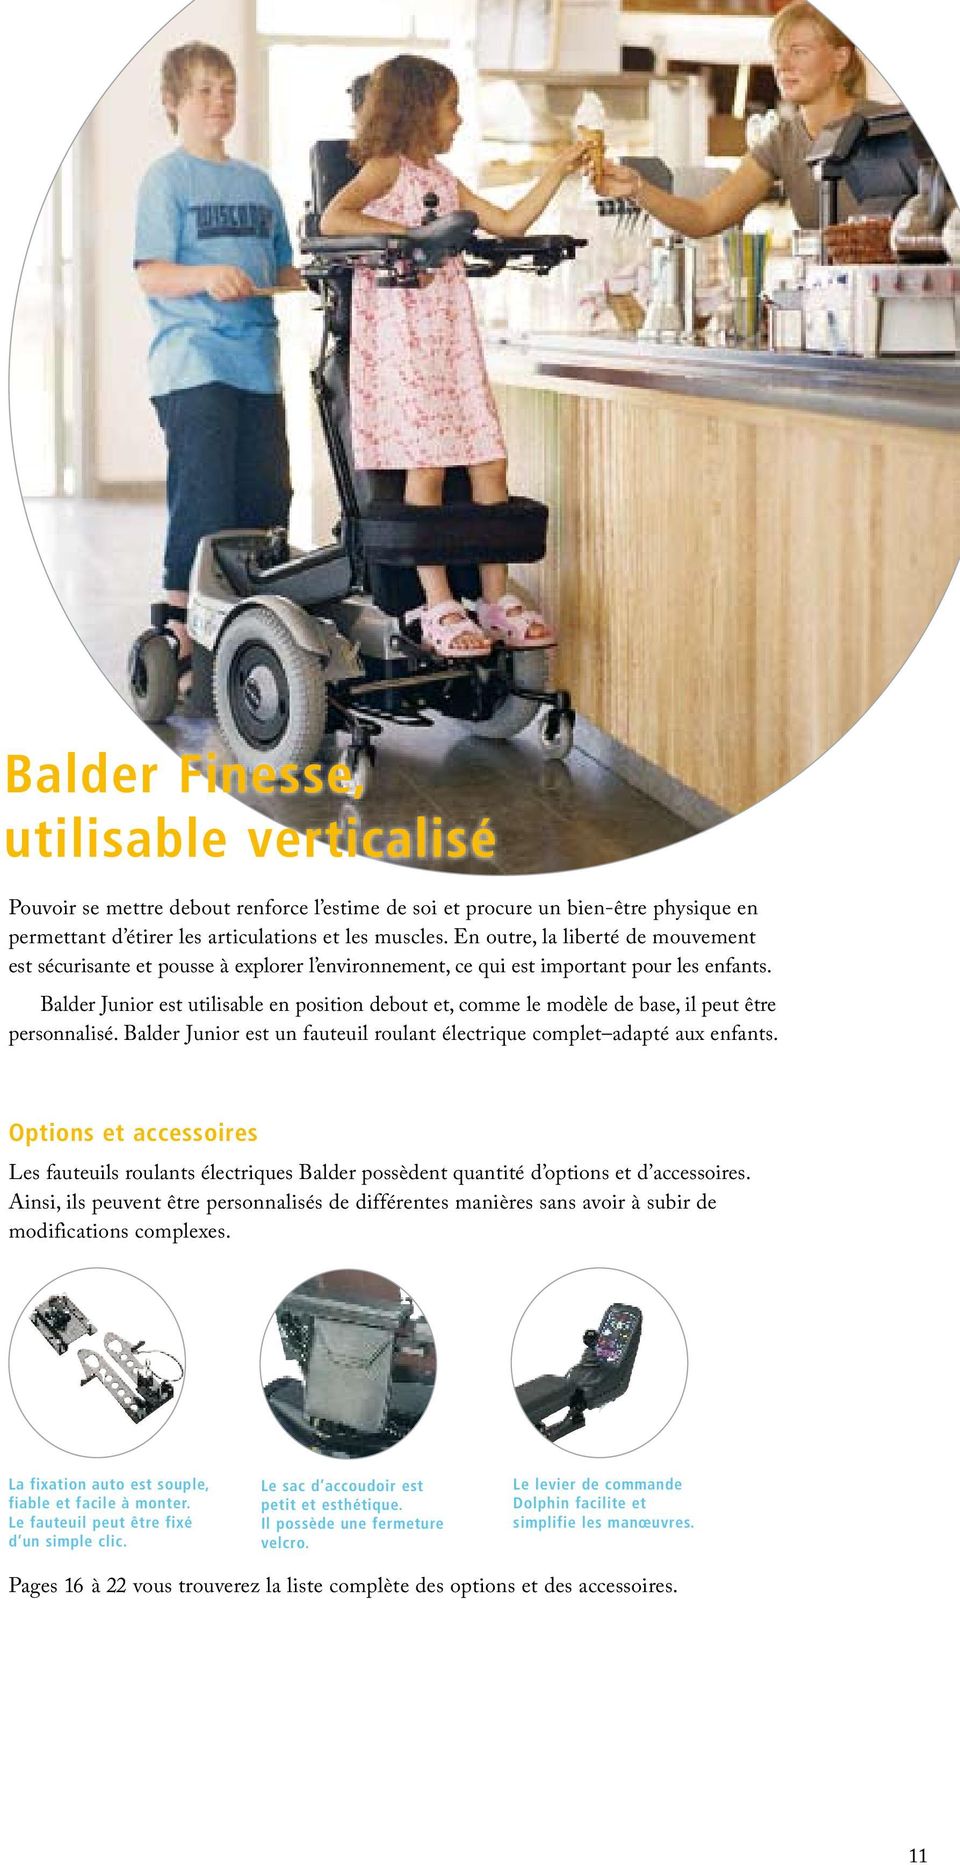 Balder Junior est utilisable en position debout et, comme le modèle de base, il peut être personnalisé. Balder Junior est un fauteuil roulant électrique complet adapté aux enfants.